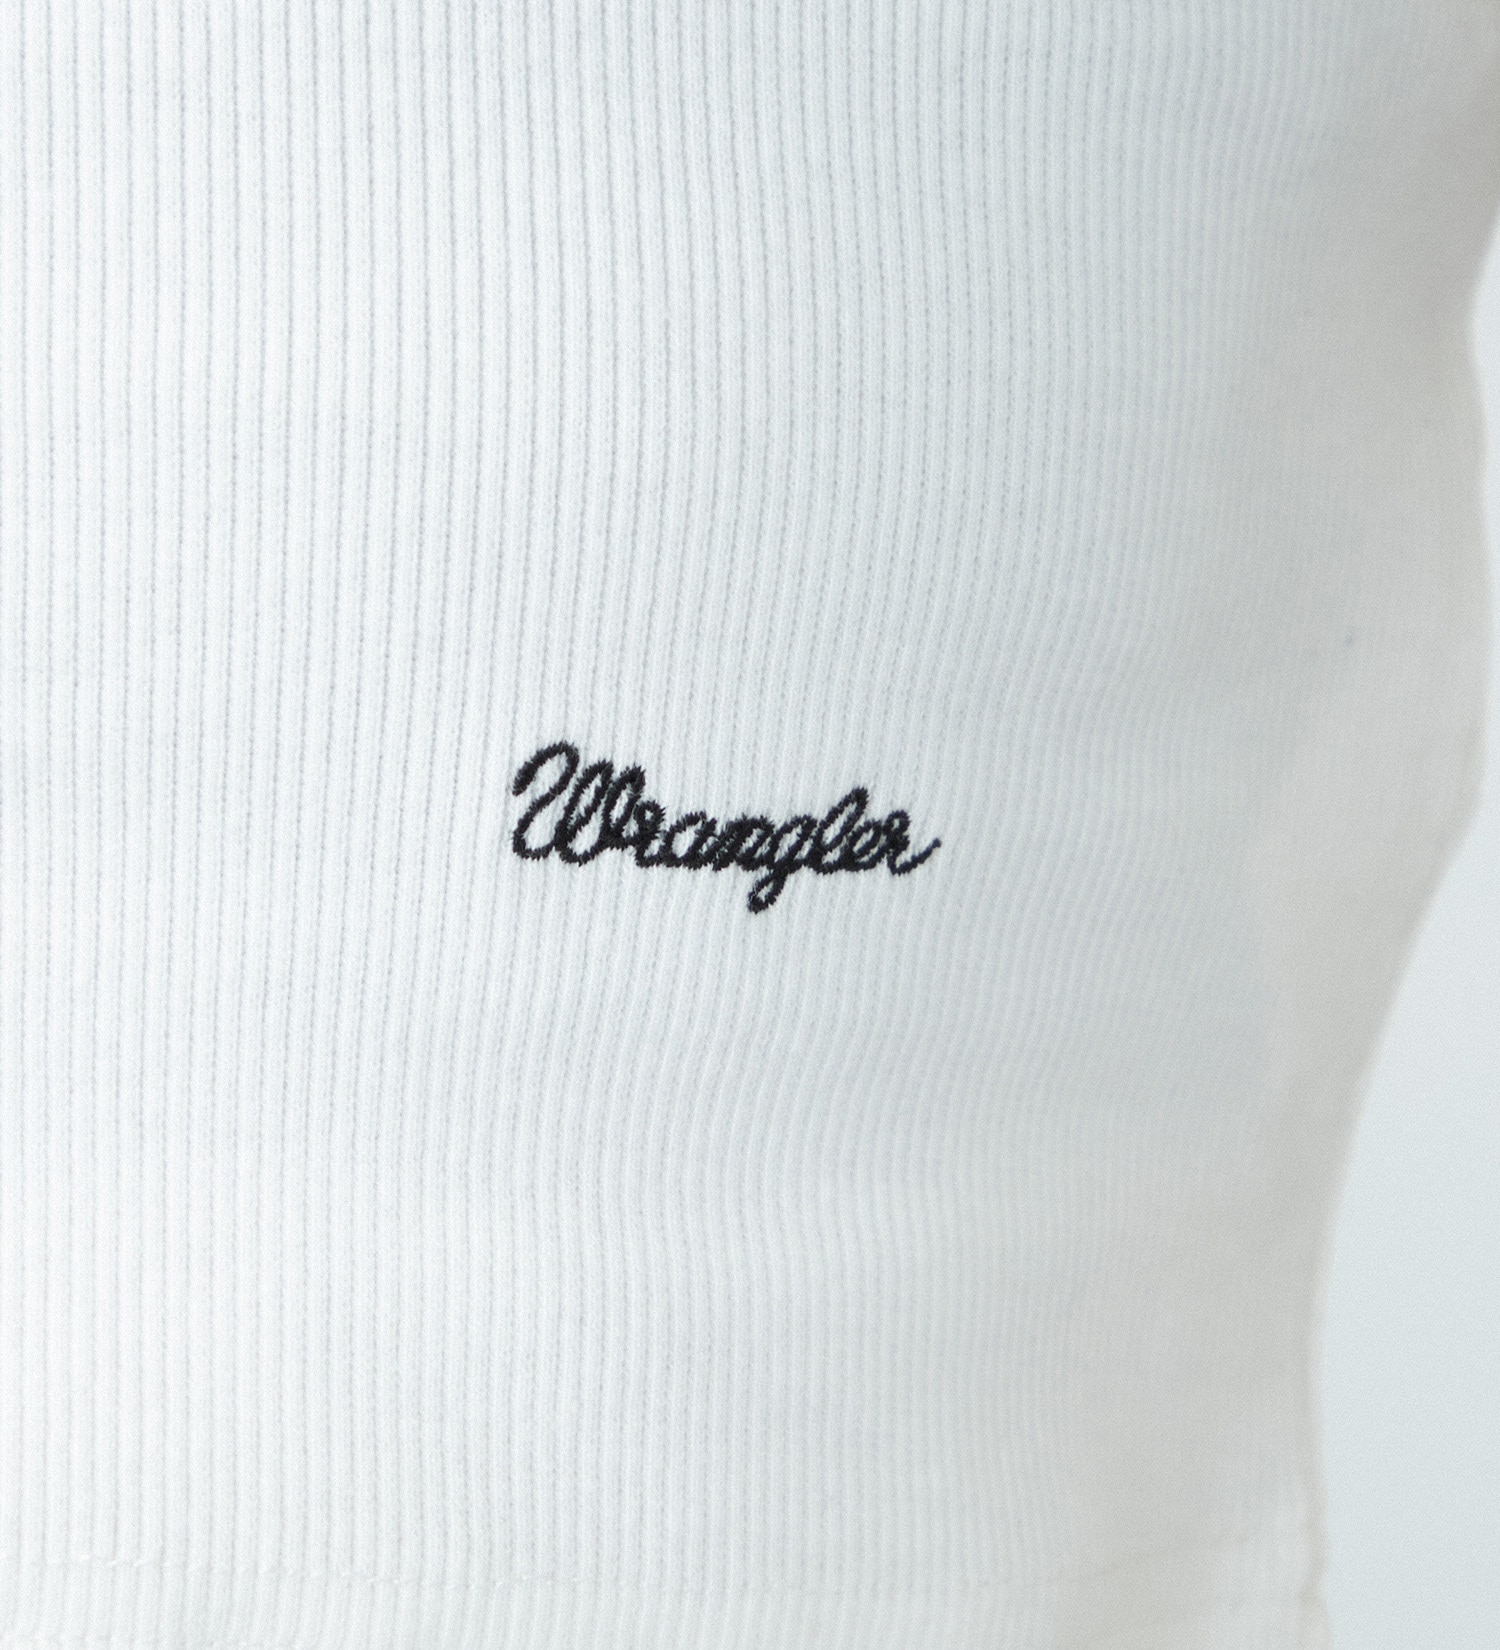 Wrangler(ラングラー)のクロップドリブタンクトップTee|トップス/タンクトップ/レディース|ホワイトxブラック